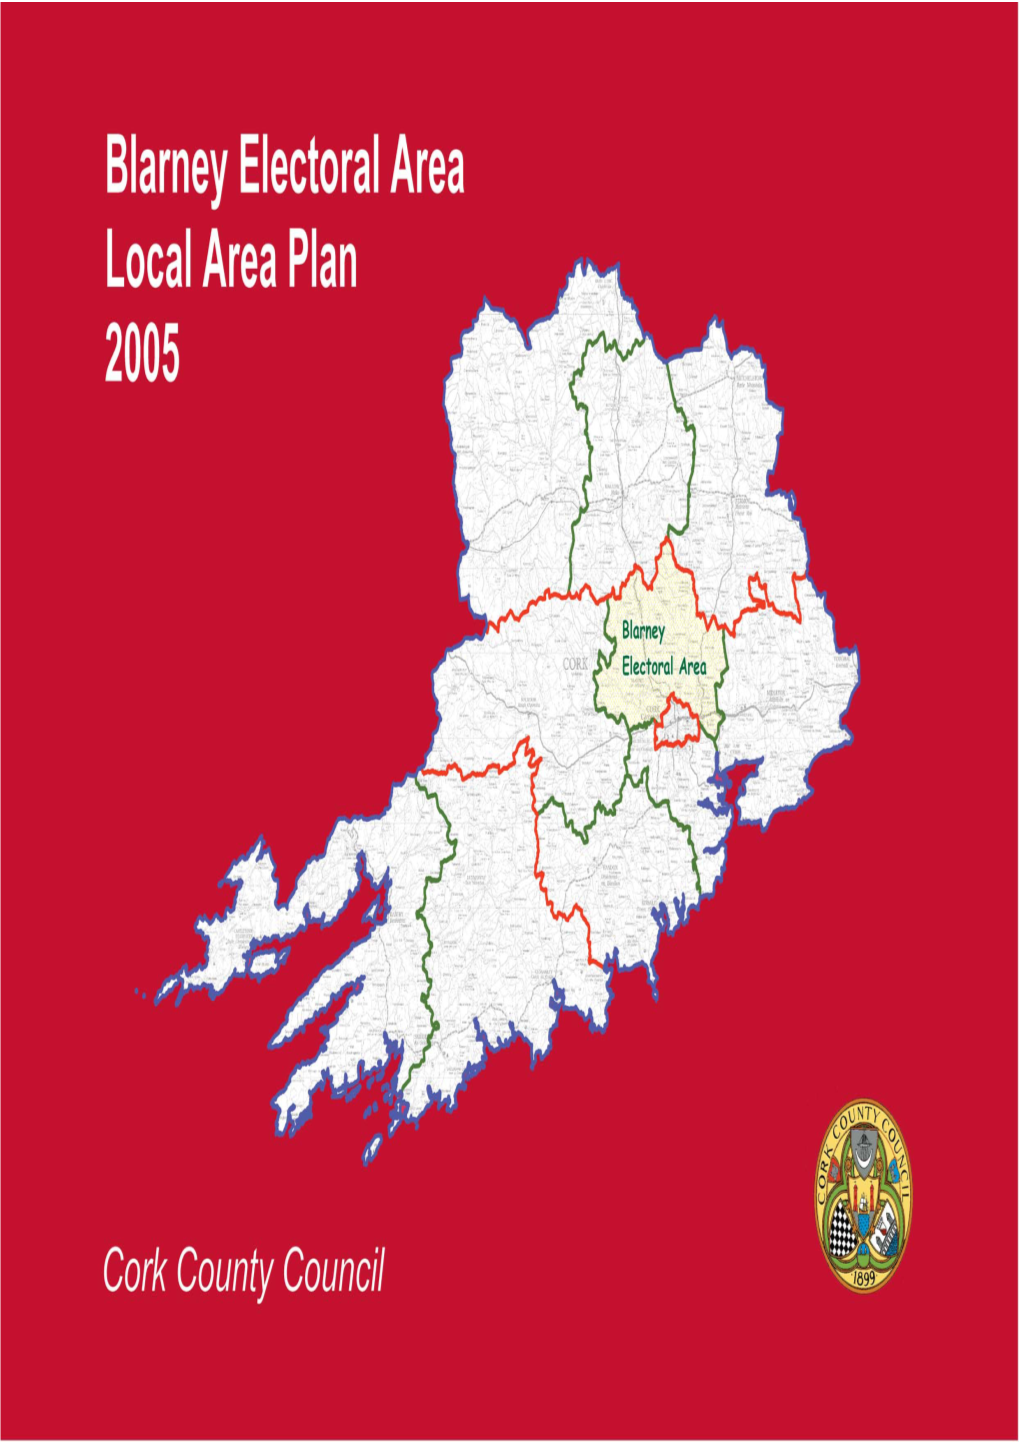 Blarney Electoral Area Local Area Plan